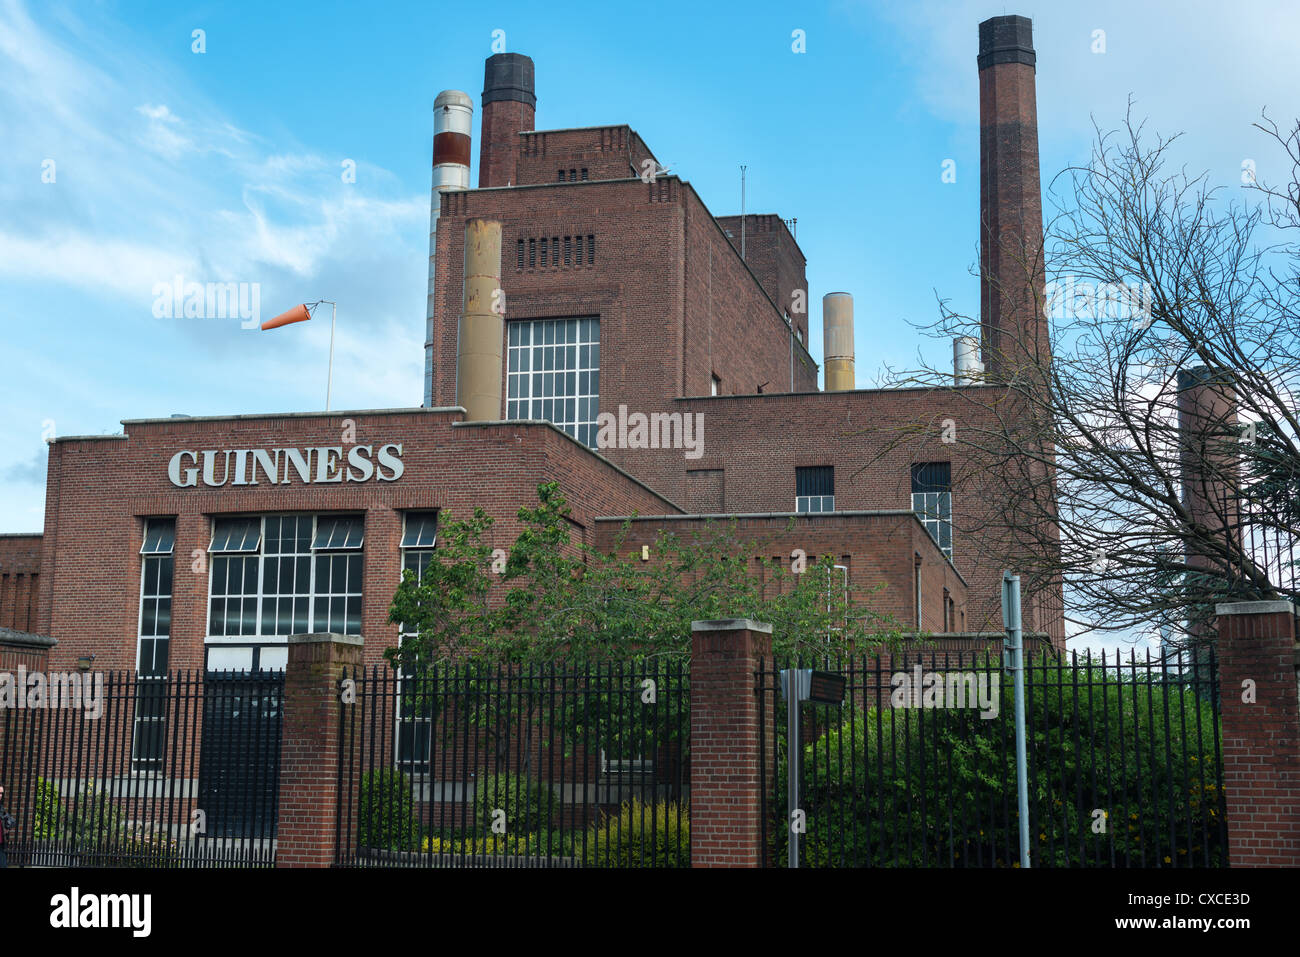 St James's Gate birreria Guinness Dublin, Repubblica di Irlanda Foto Stock